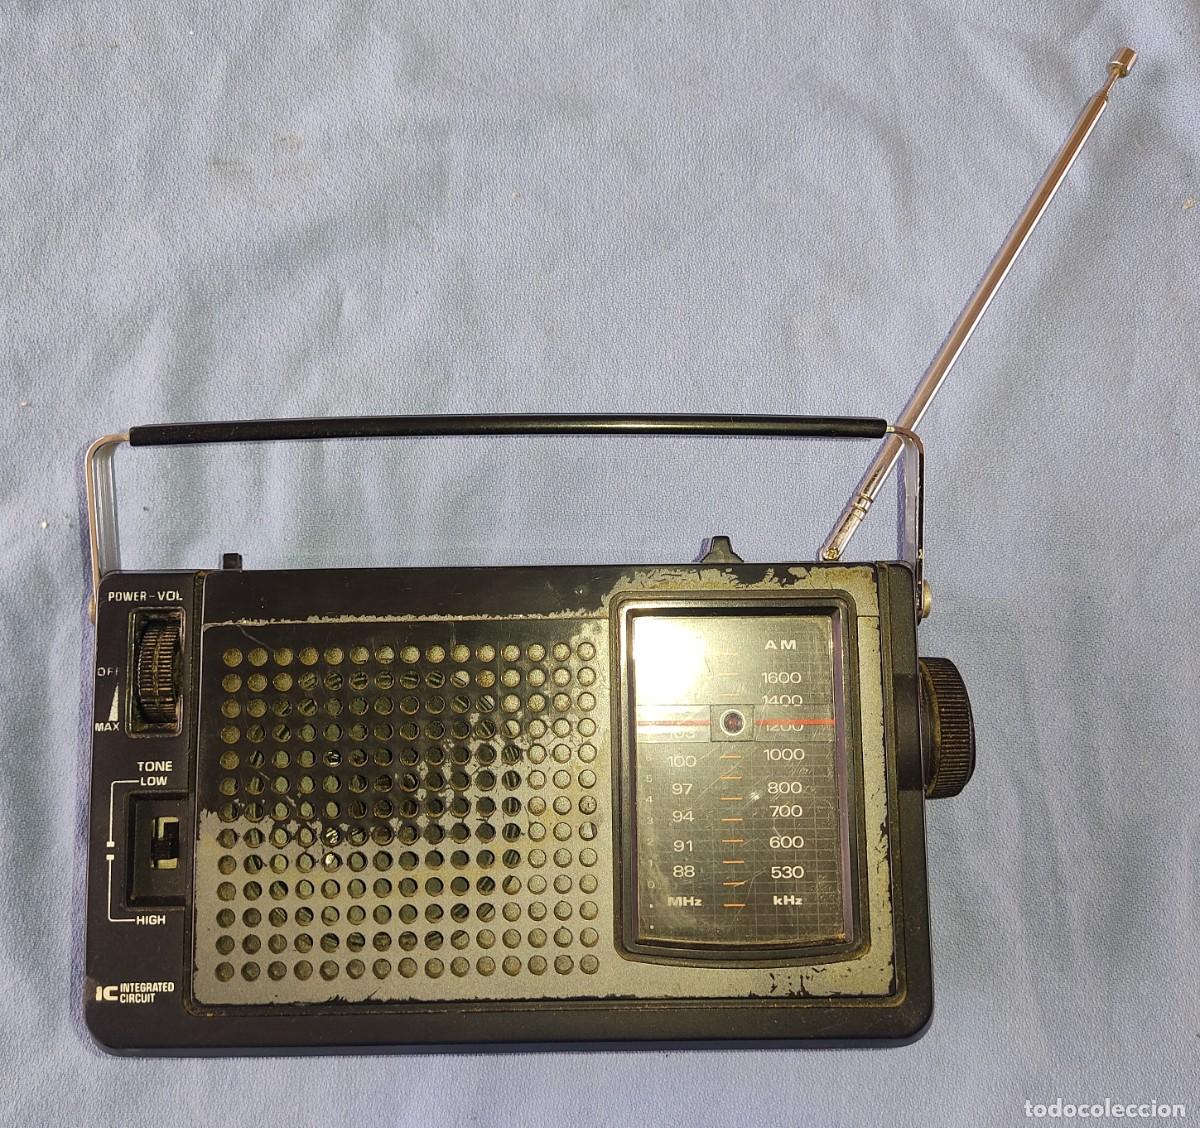 enviar Bajo mandato sátira antiguo radio transistor sanyo model no. rp 616 - Compra venta en  todocoleccion